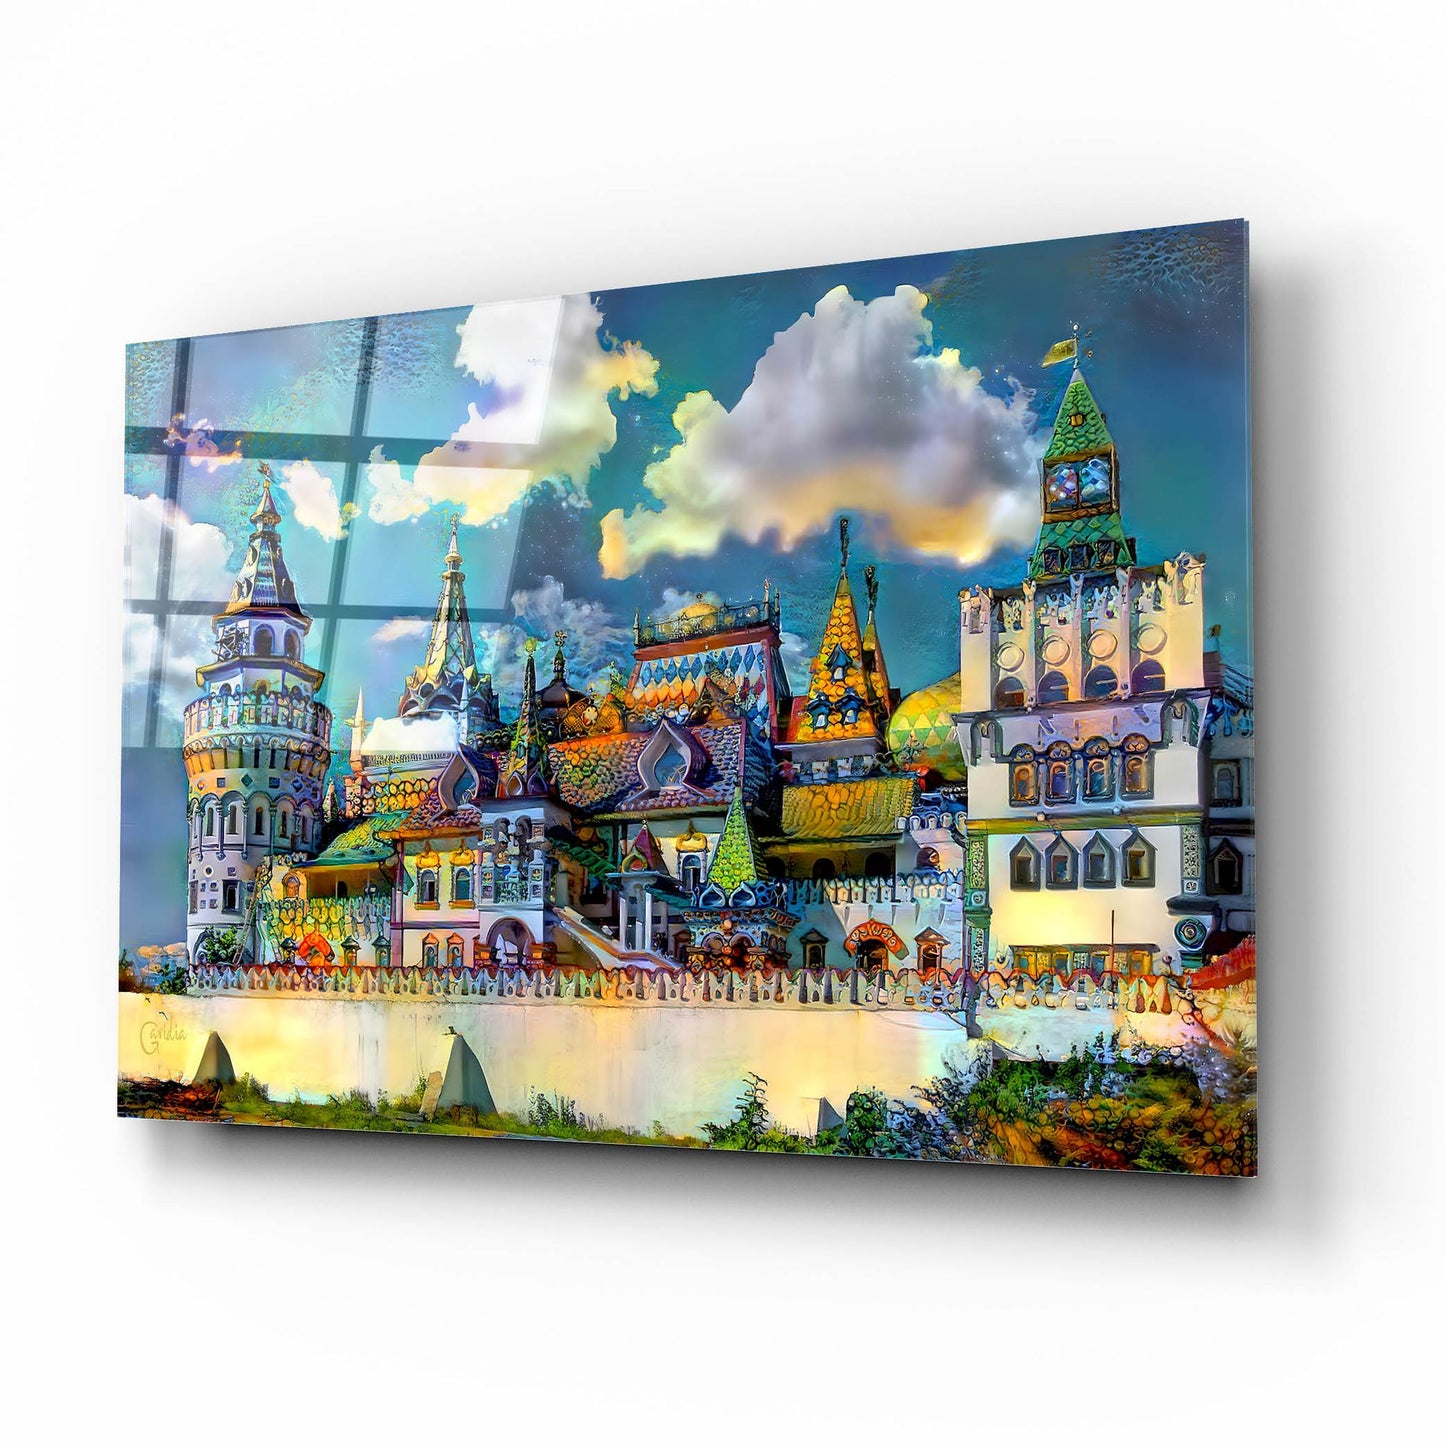 Epic Art 'Moscow Russia Izmailovsky Market' by Pedro Gavidia, Acrylic Glass Wall Art,16x12